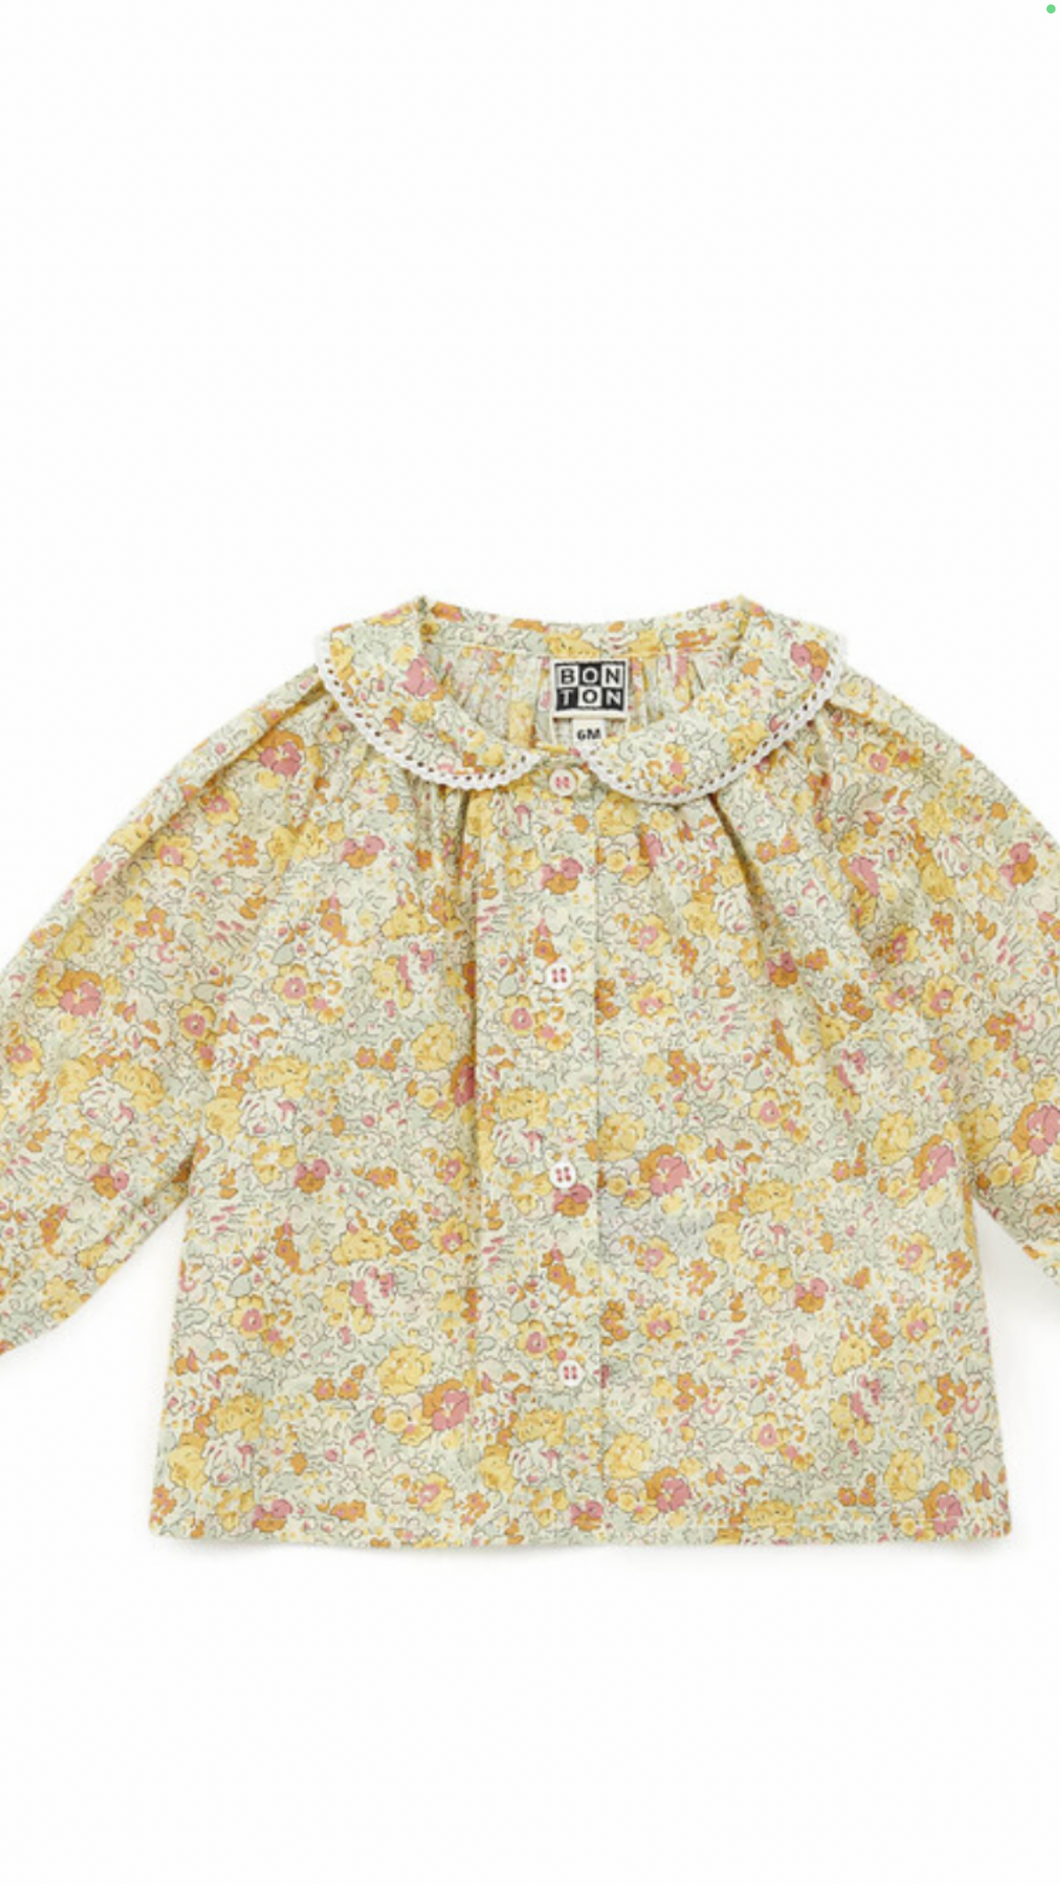 Bonton blouse n90